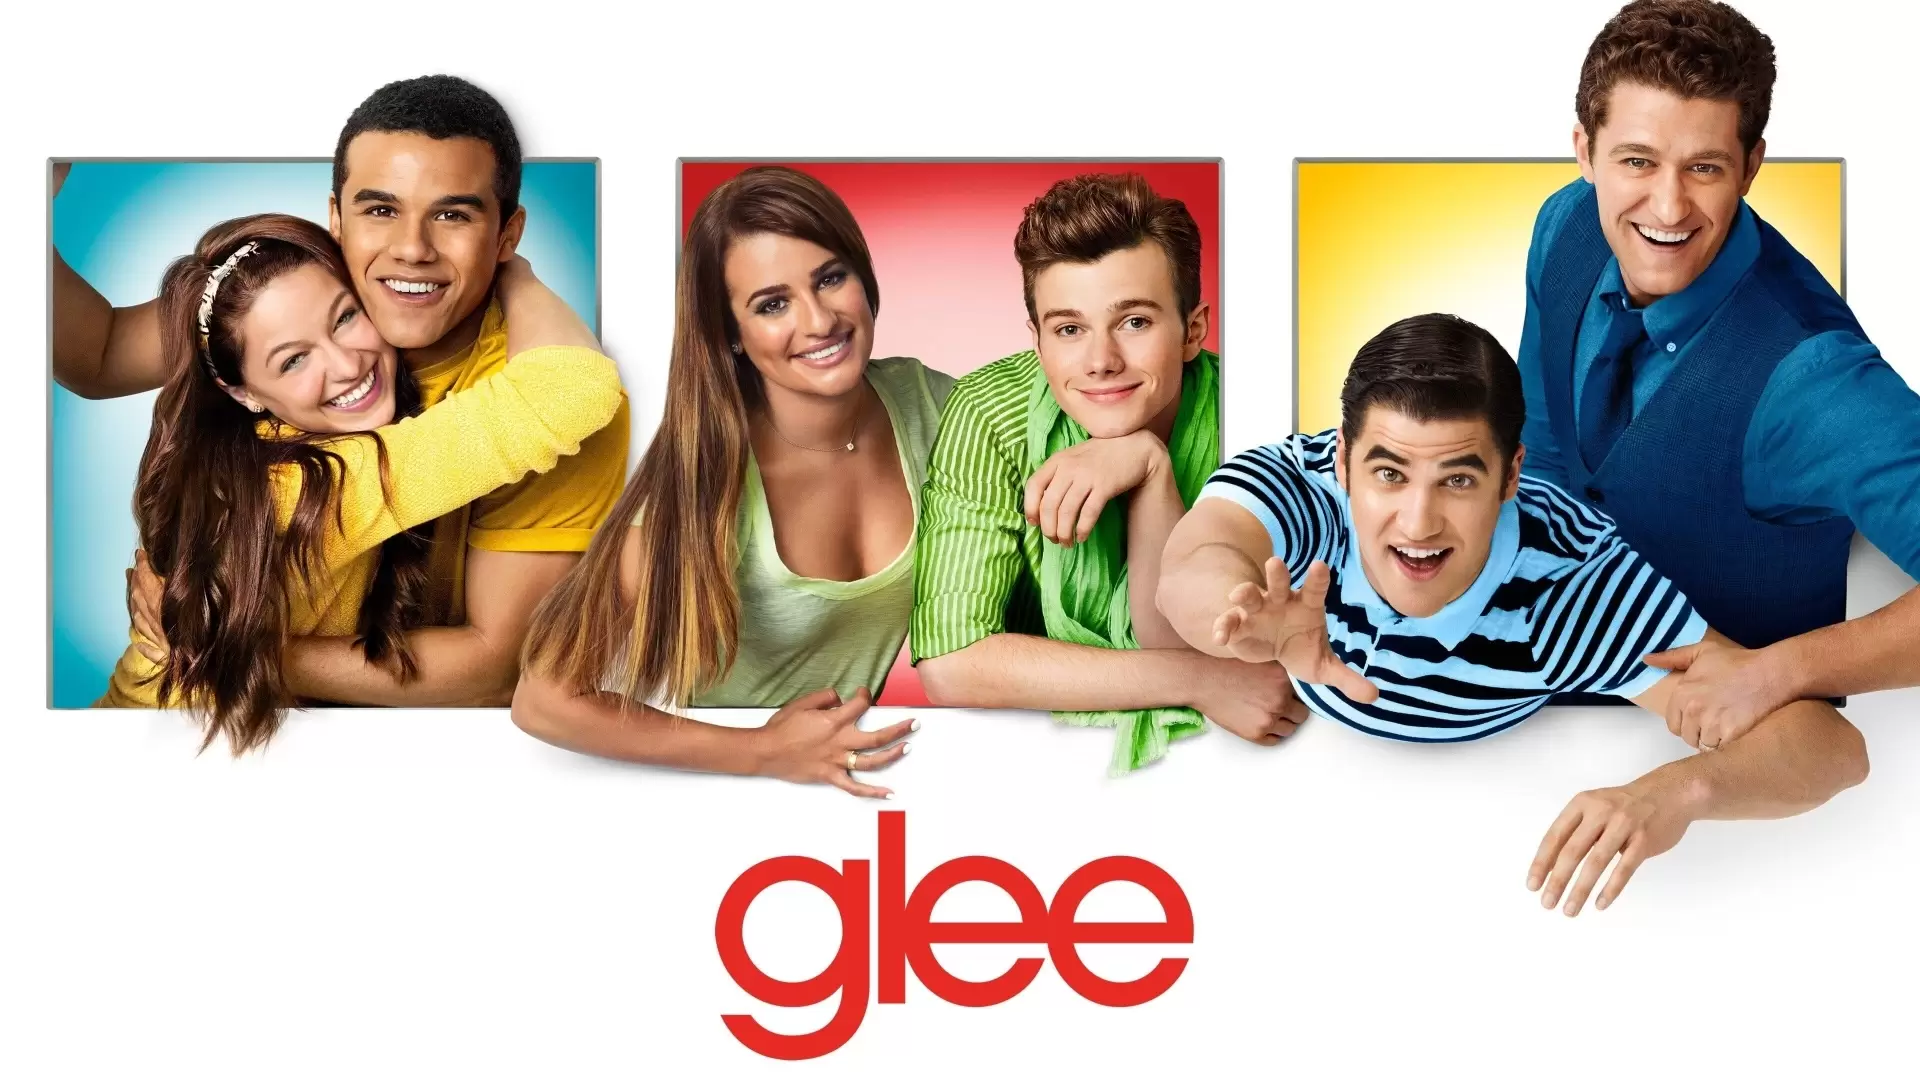 دانلود سریال Glee 2009 با زیرنویس فارسی